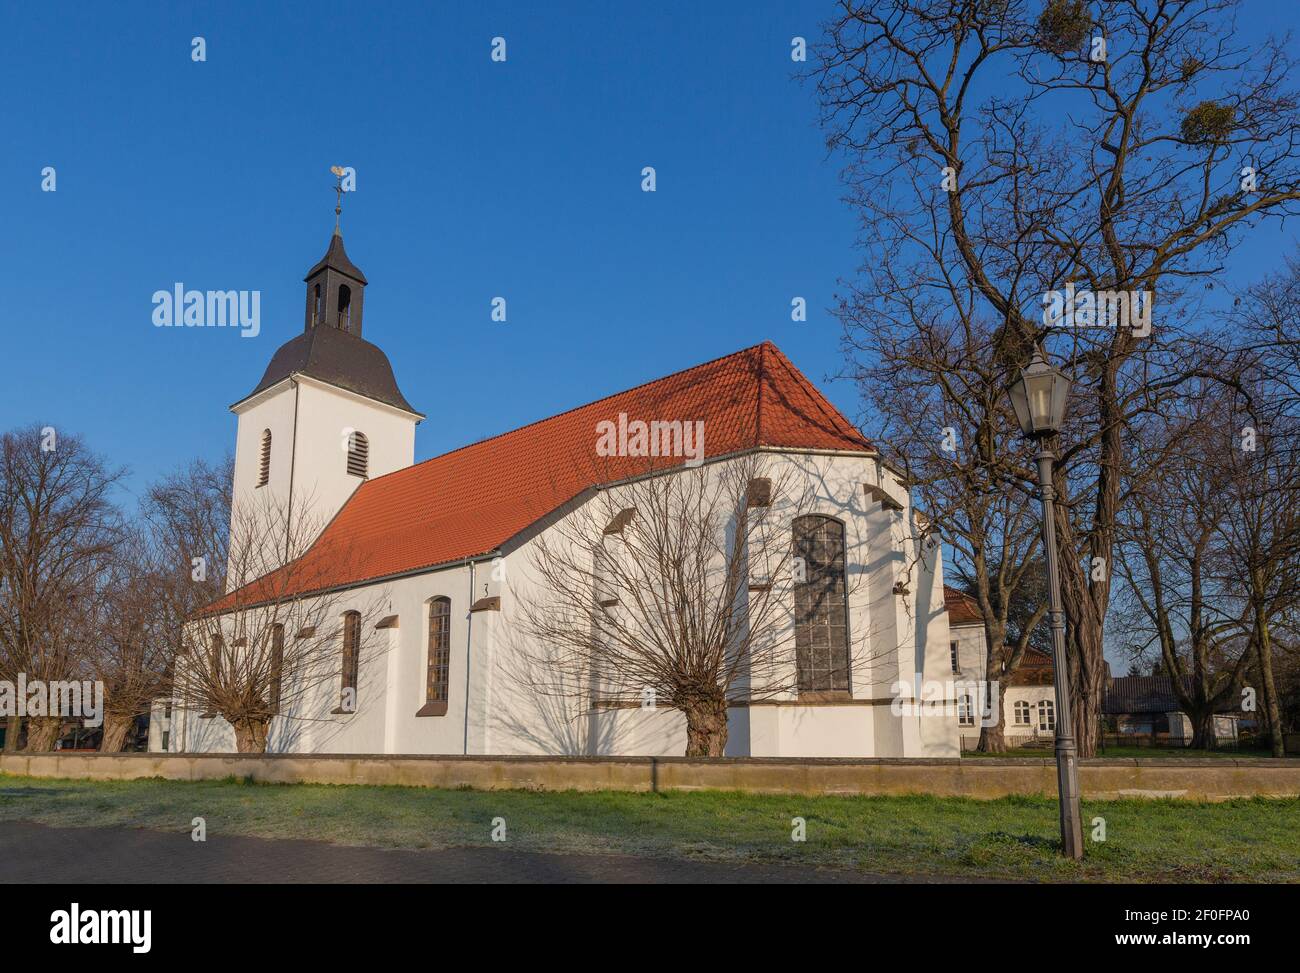 Duisburg - Vista alla chiesa del villaggio da parte ed evangelico dal 1560, originariamente dedicato a Saint Martin, Nord Reno Westfalia, Germania, 07.03 Foto Stock